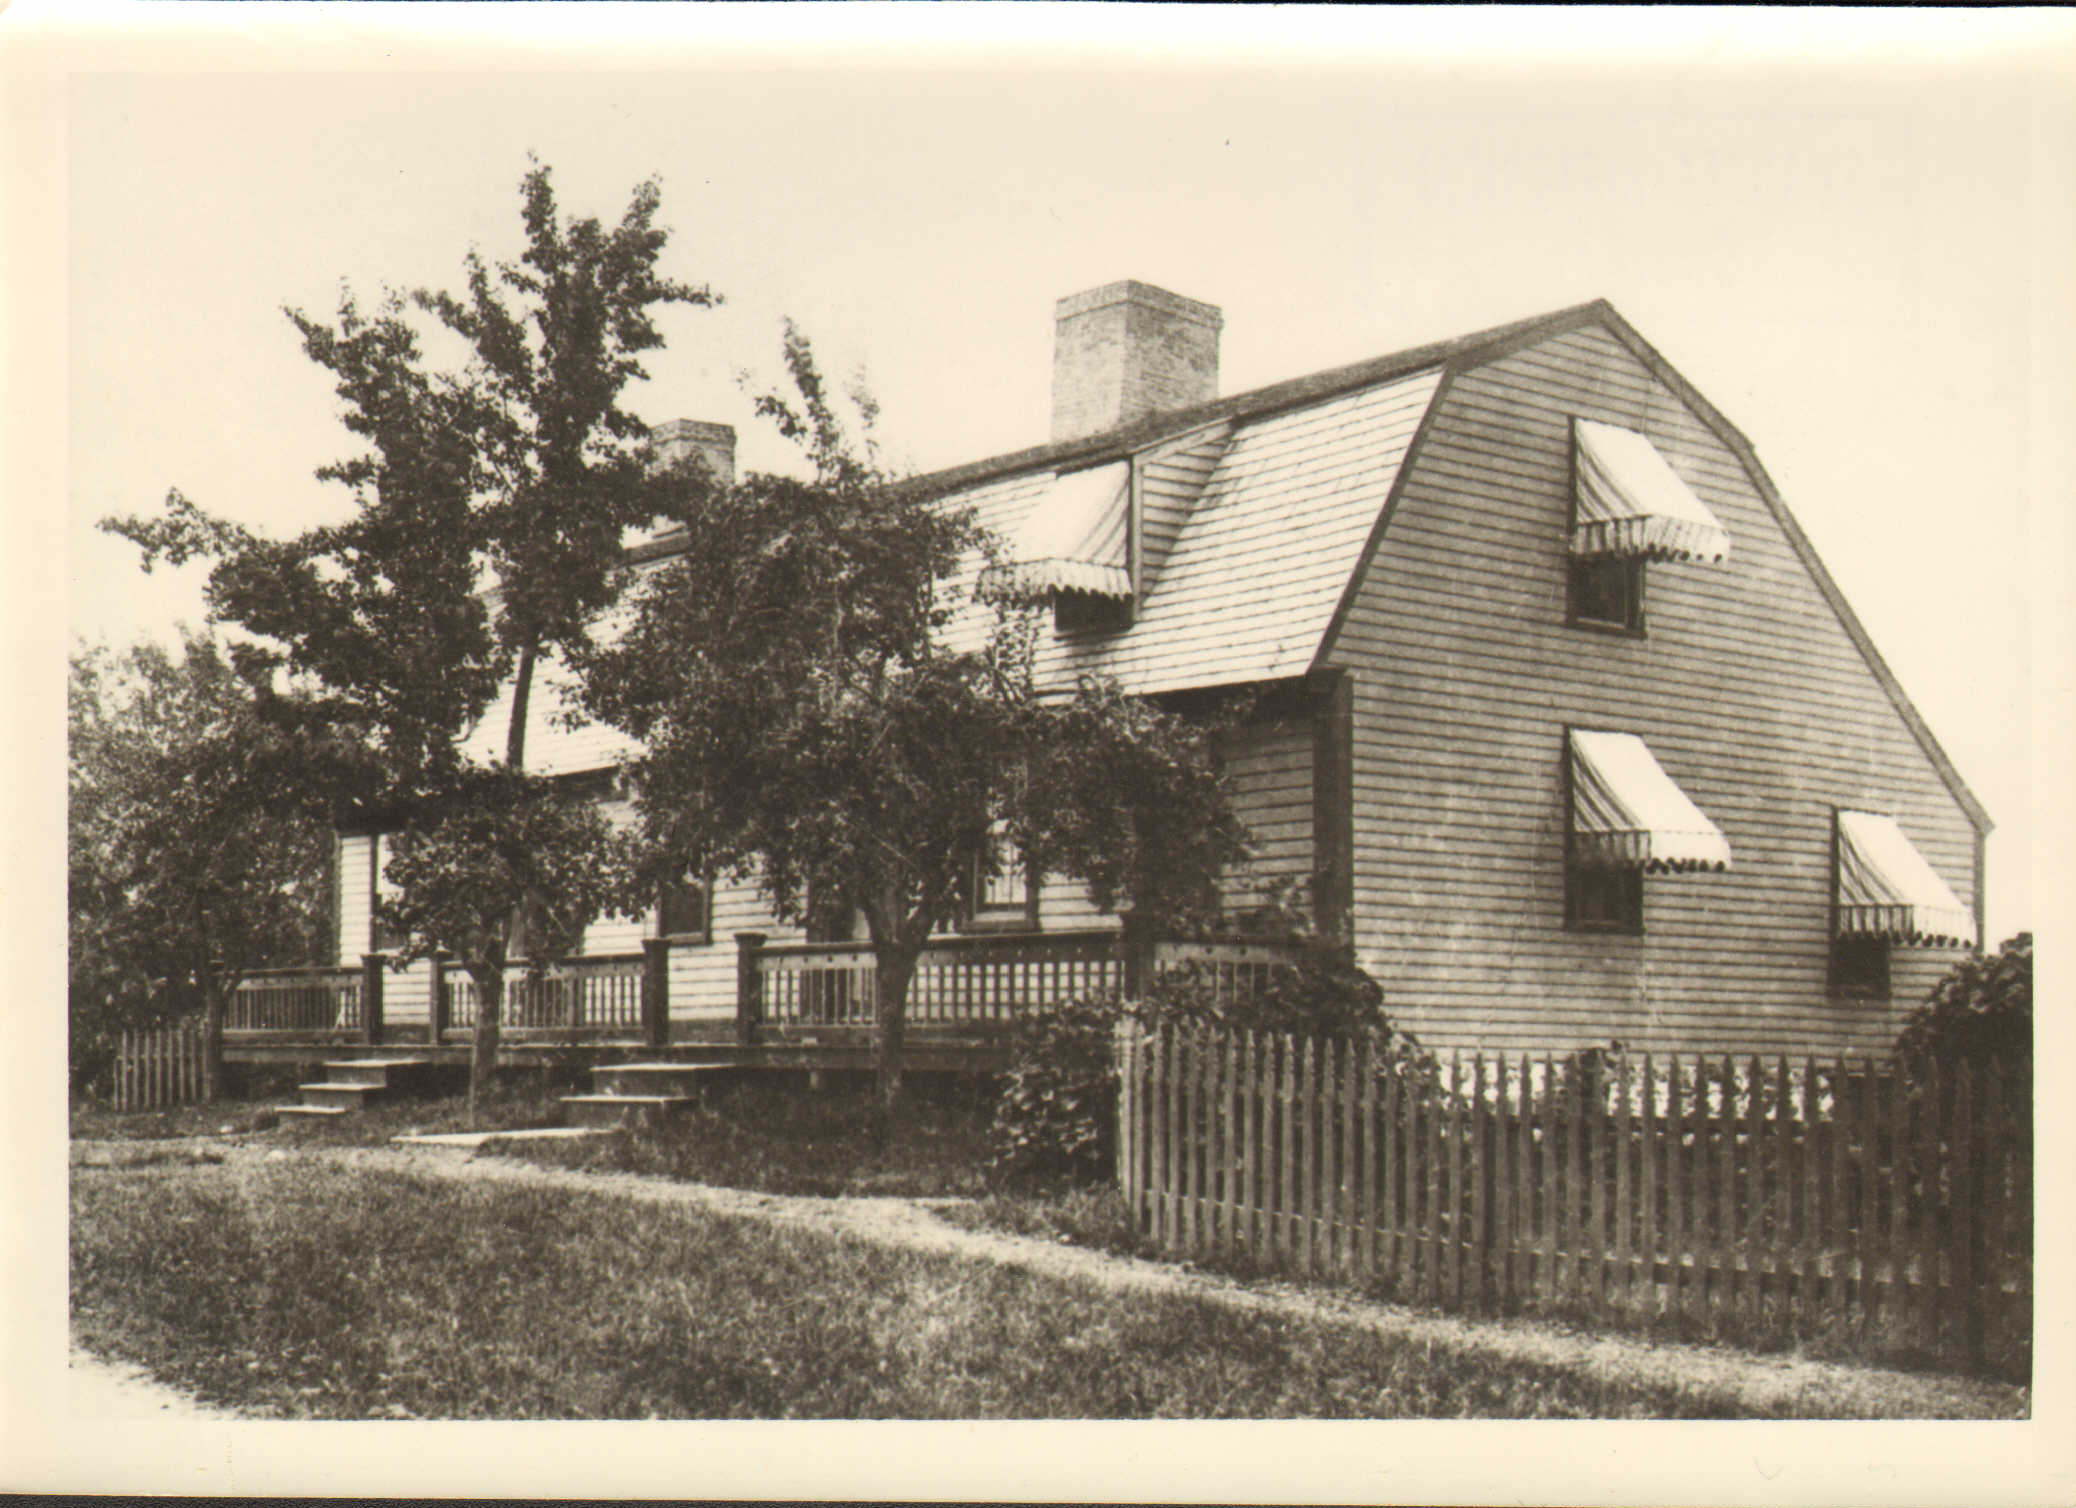 The Myles Garrison House